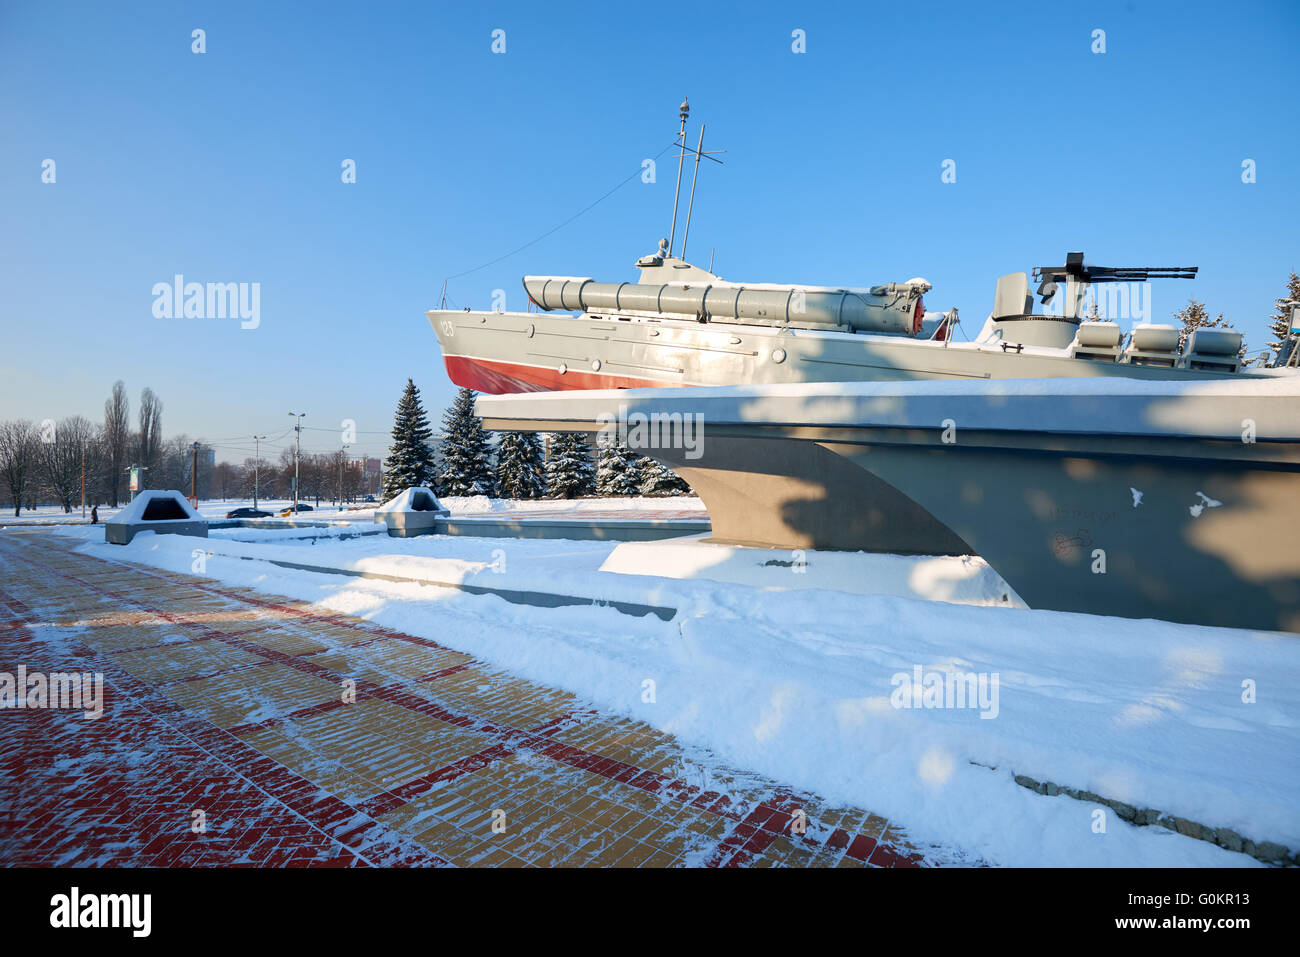 KALININGRAD, RUSSIA - JANUARY 21, 2016: World War II memorial Torpedo boat Komsomolets. Work of sculptor Morgunov in 1978 Stock Photo